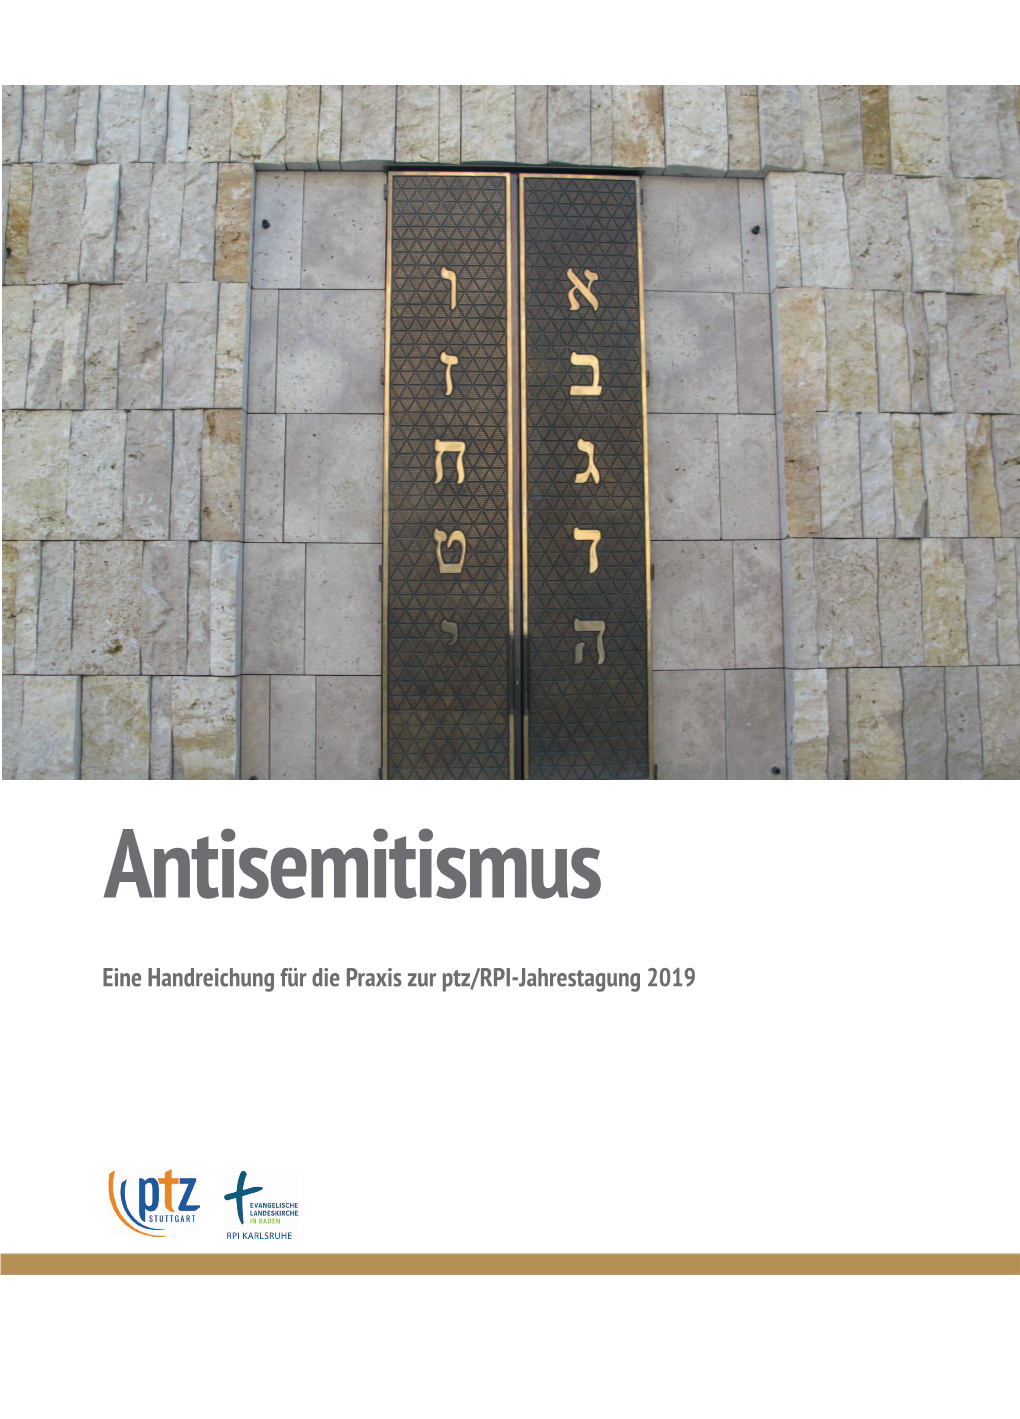 Handreichung Antisemitismus Als Pdf-Datei Zum Download Bereit